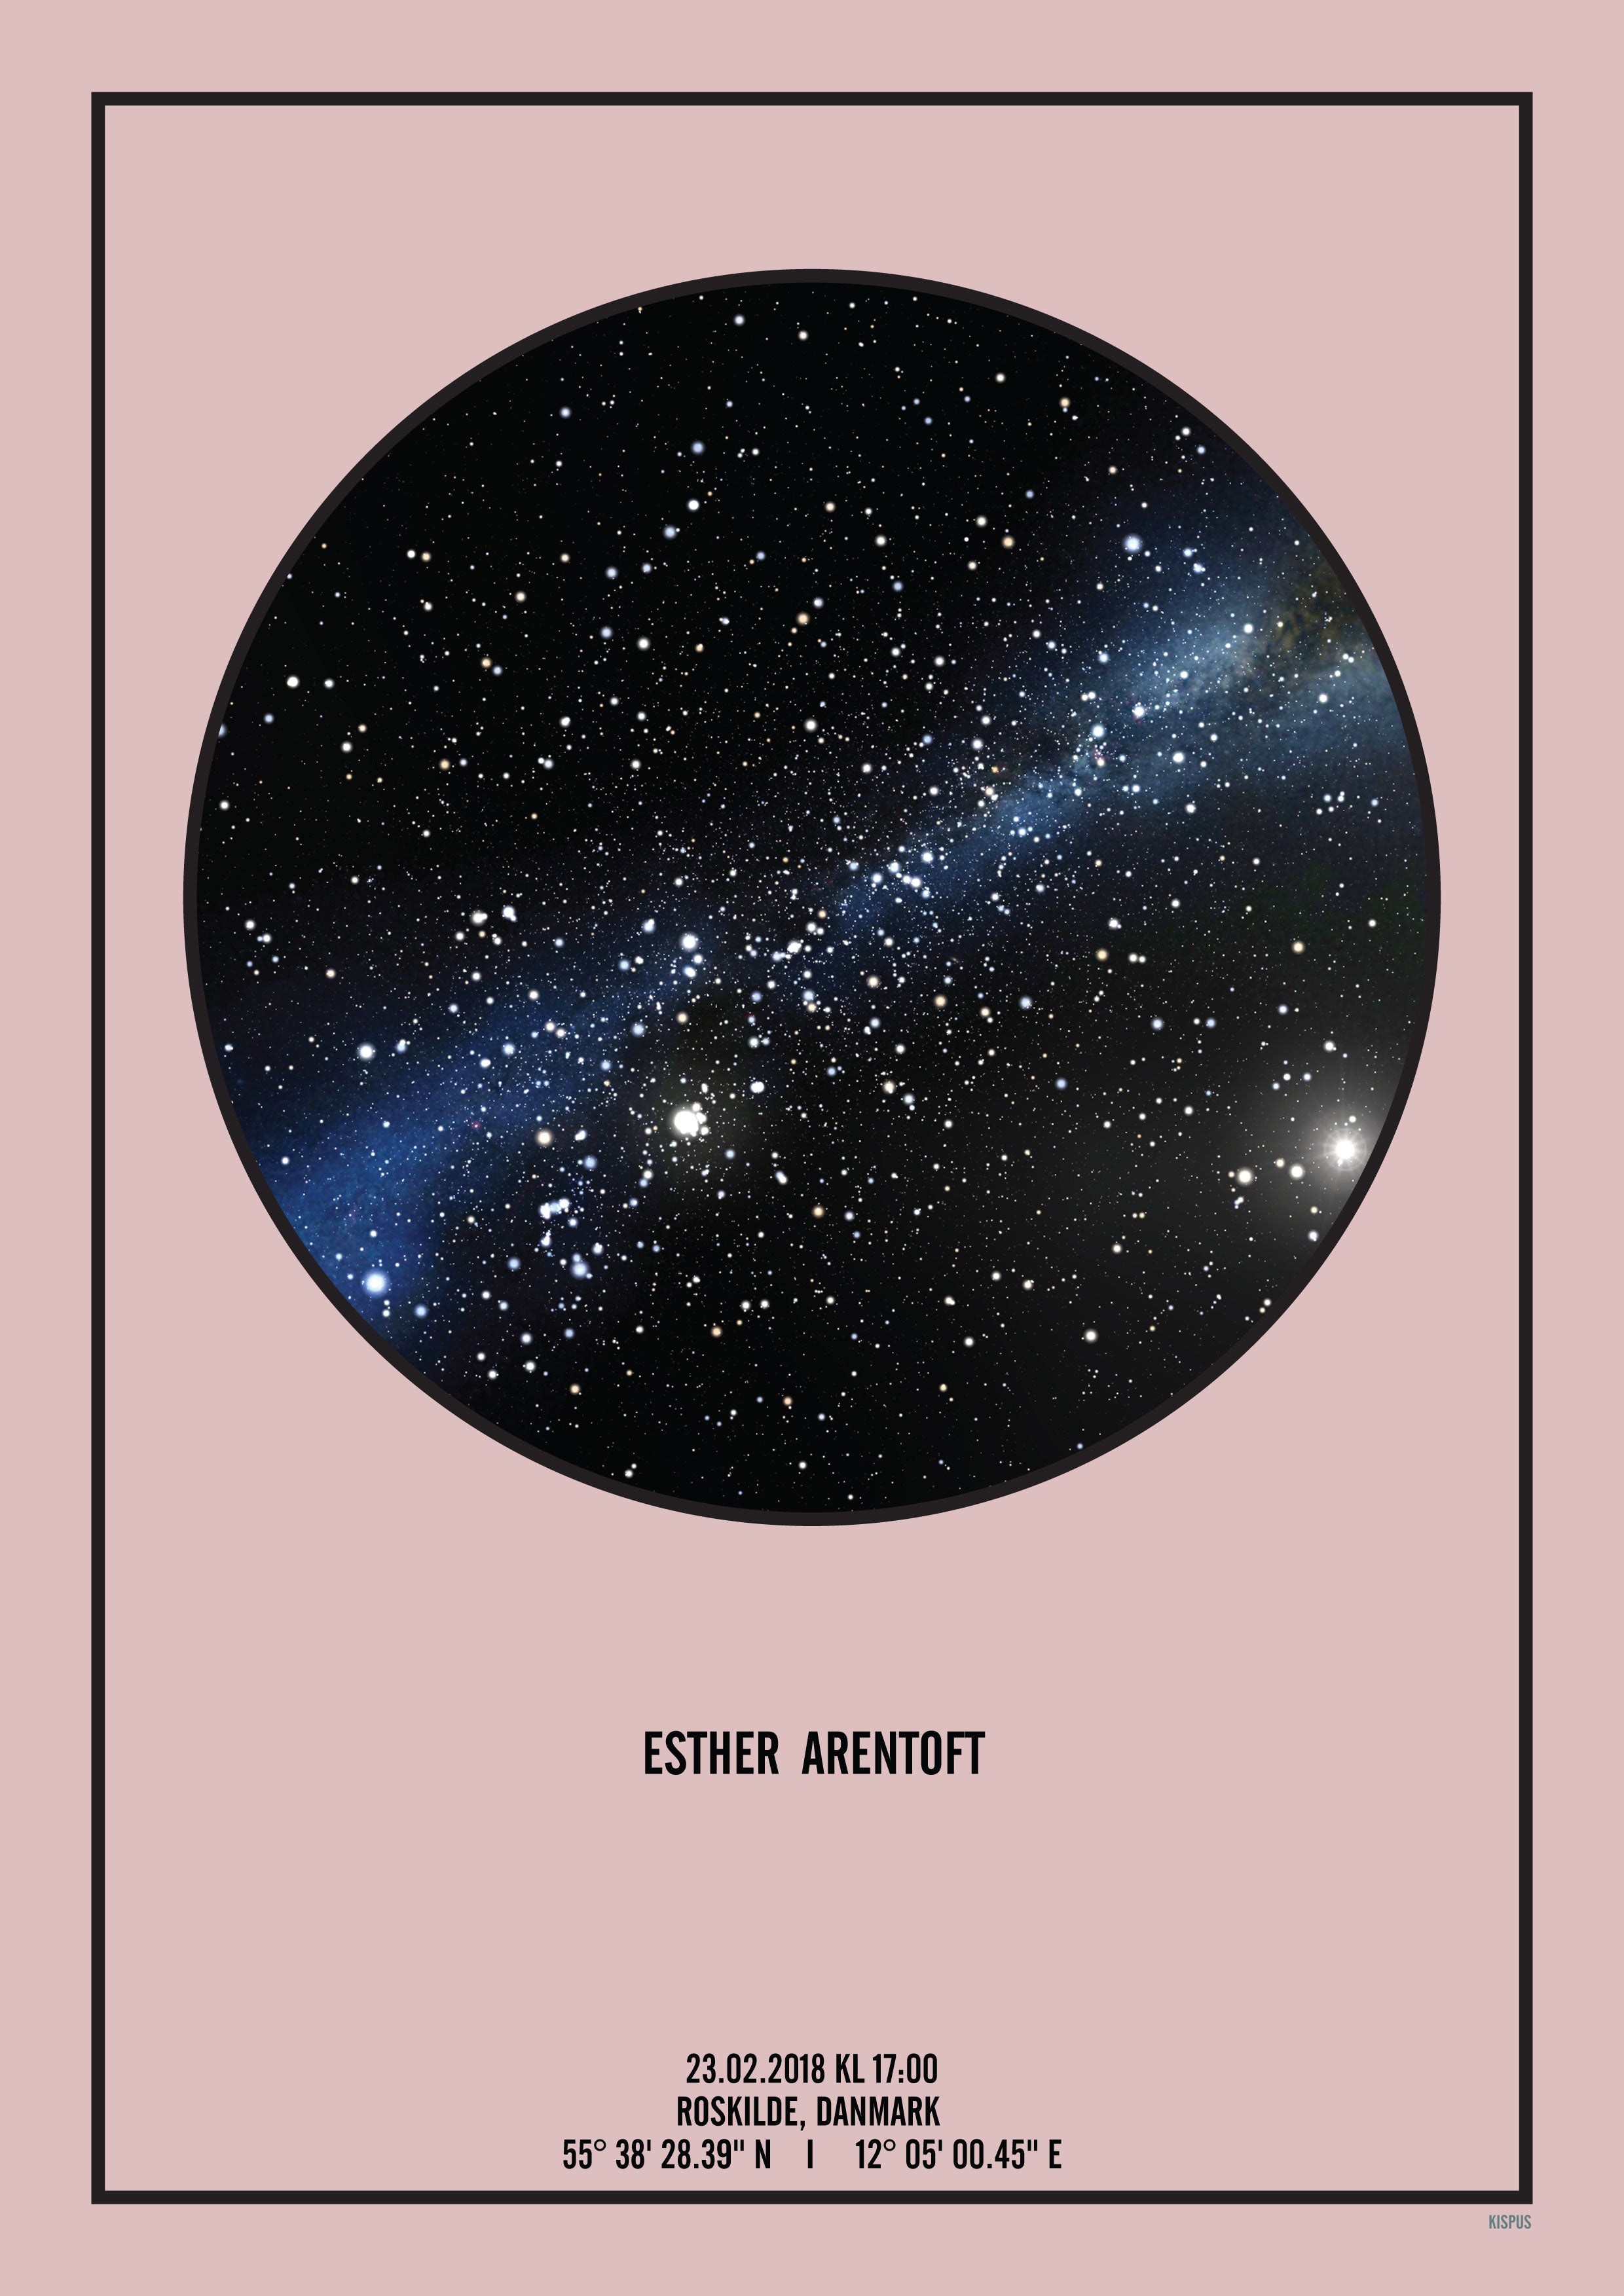 Se PERSONLIG STJERNEHIMMEL PLAKAT (LYSERØD) - 50x70 / Sort tekst og sort stjernehimmel / Stjernehimmel med mælkevej hos KISPUS